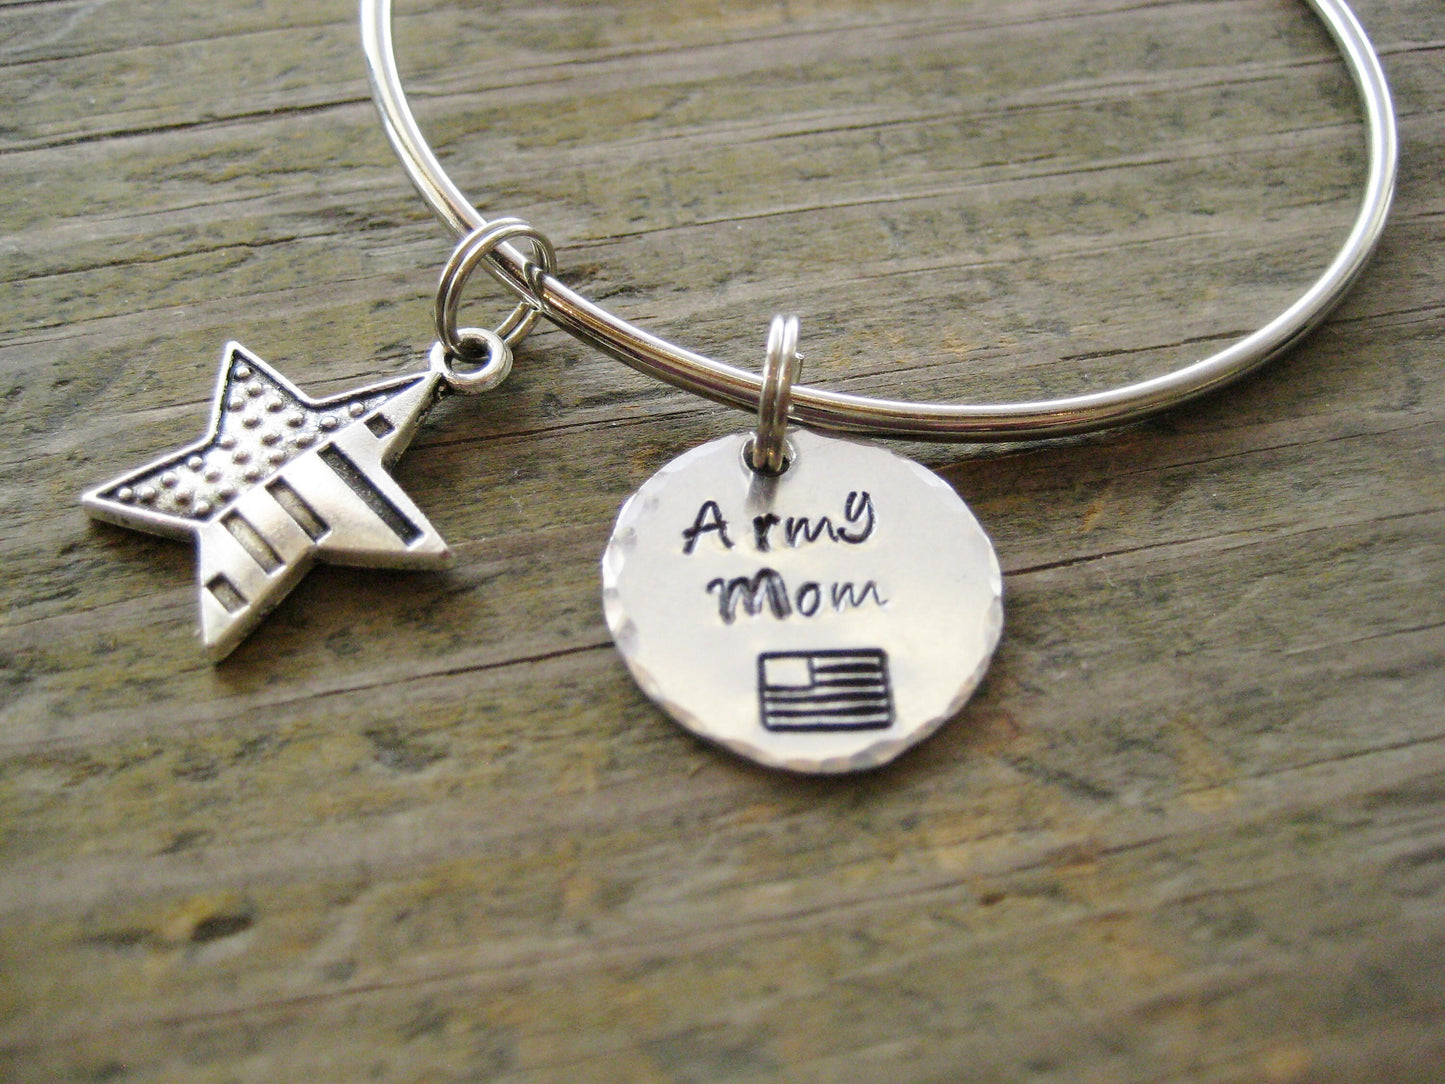 ARMY MOM BRACELET- Army charm bracelet, Army Gift, Army jewelry, Military mom Jewelry, mother's day gift, gift for mom, military mom gift